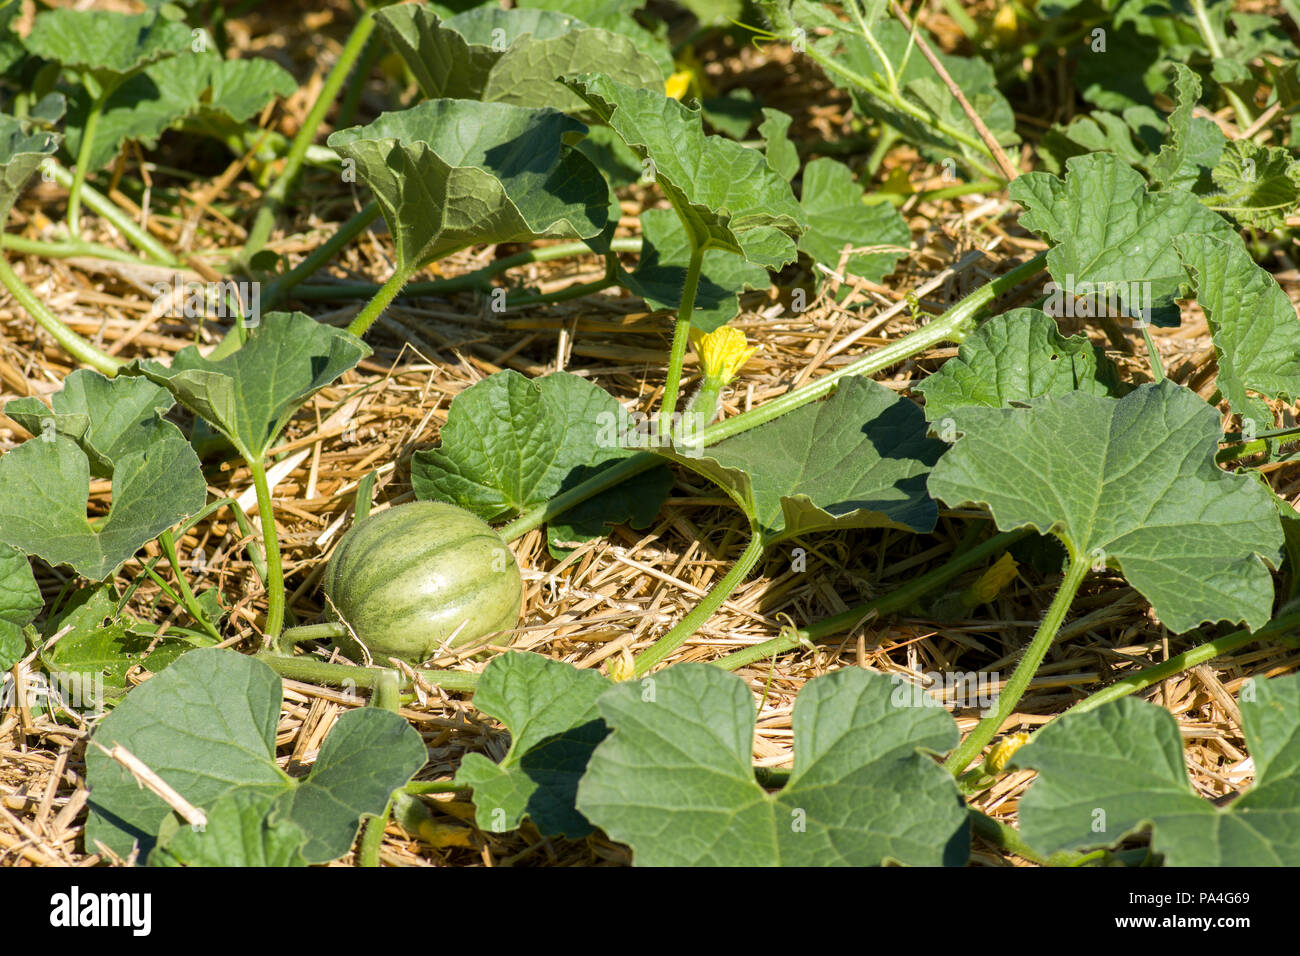 Halona Hybrid Zuckermelone wachsen auf Stroh Laubdecke Lager junge Frucht. Stockfoto